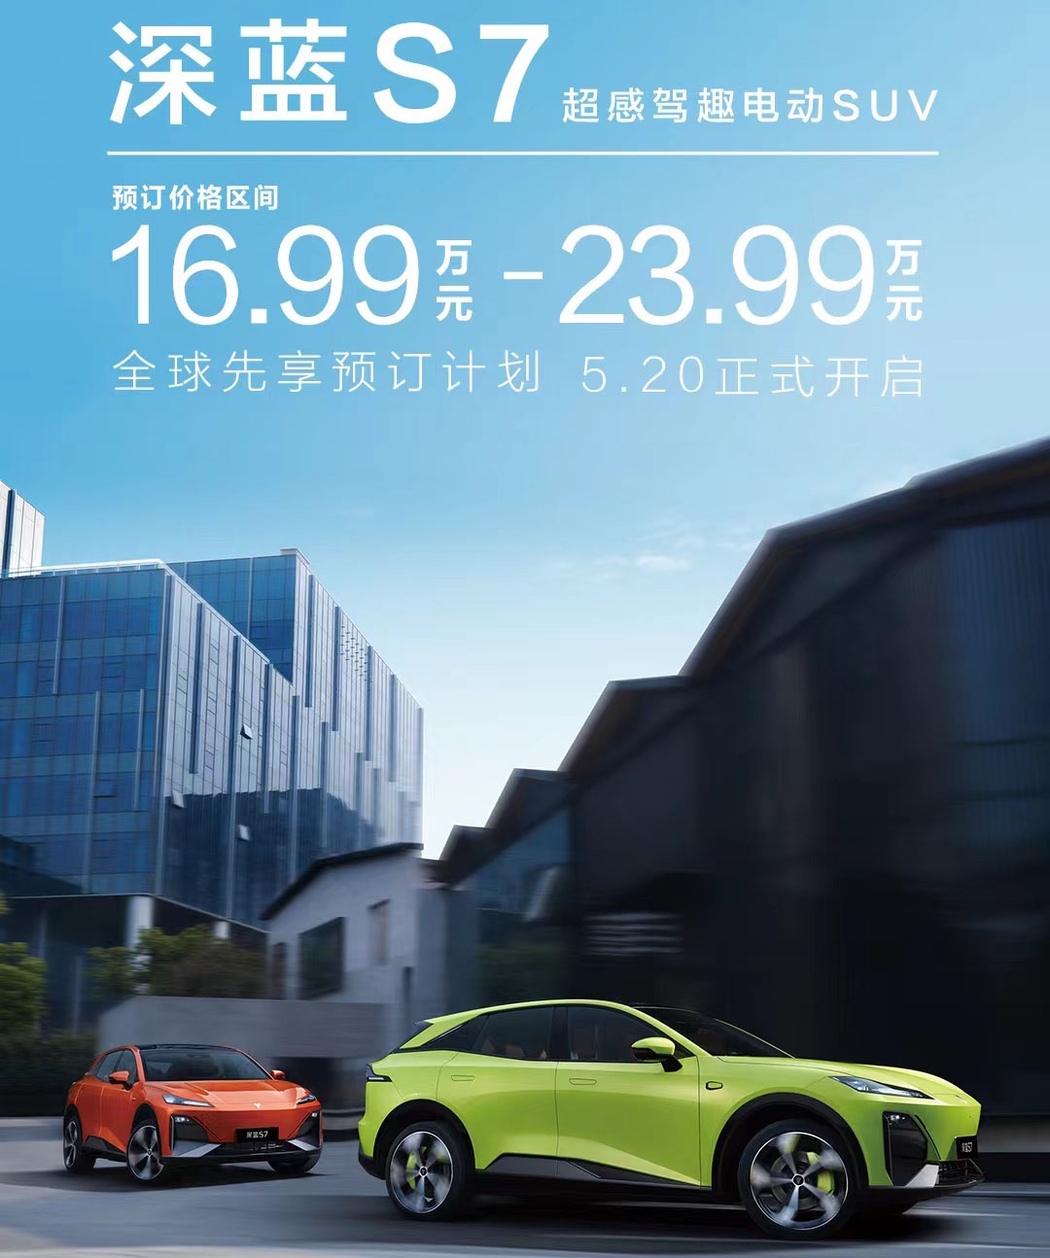 冲击40万辆销量目标 深蓝S7预售价16.99万起